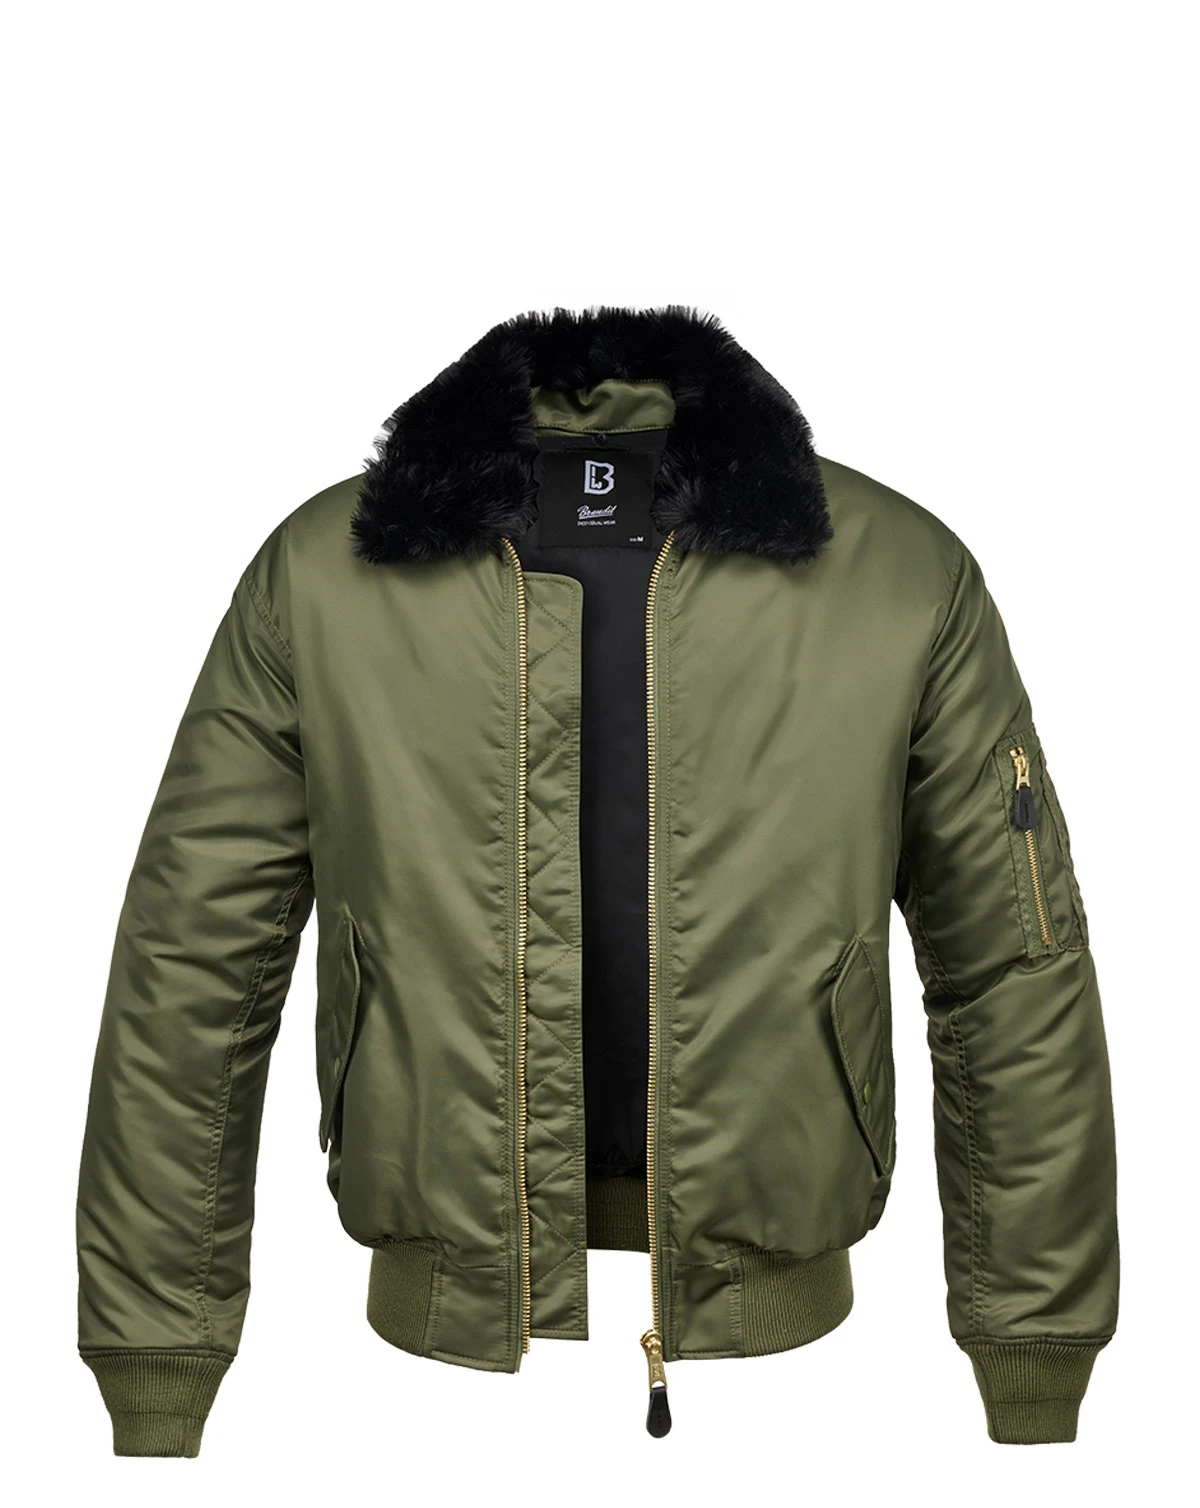 spids Handel Kan ikke lide Køb Brandit MA2 Bomber Jacket - Fur Collar | Fri Fragt over 700 | ARMY STAR